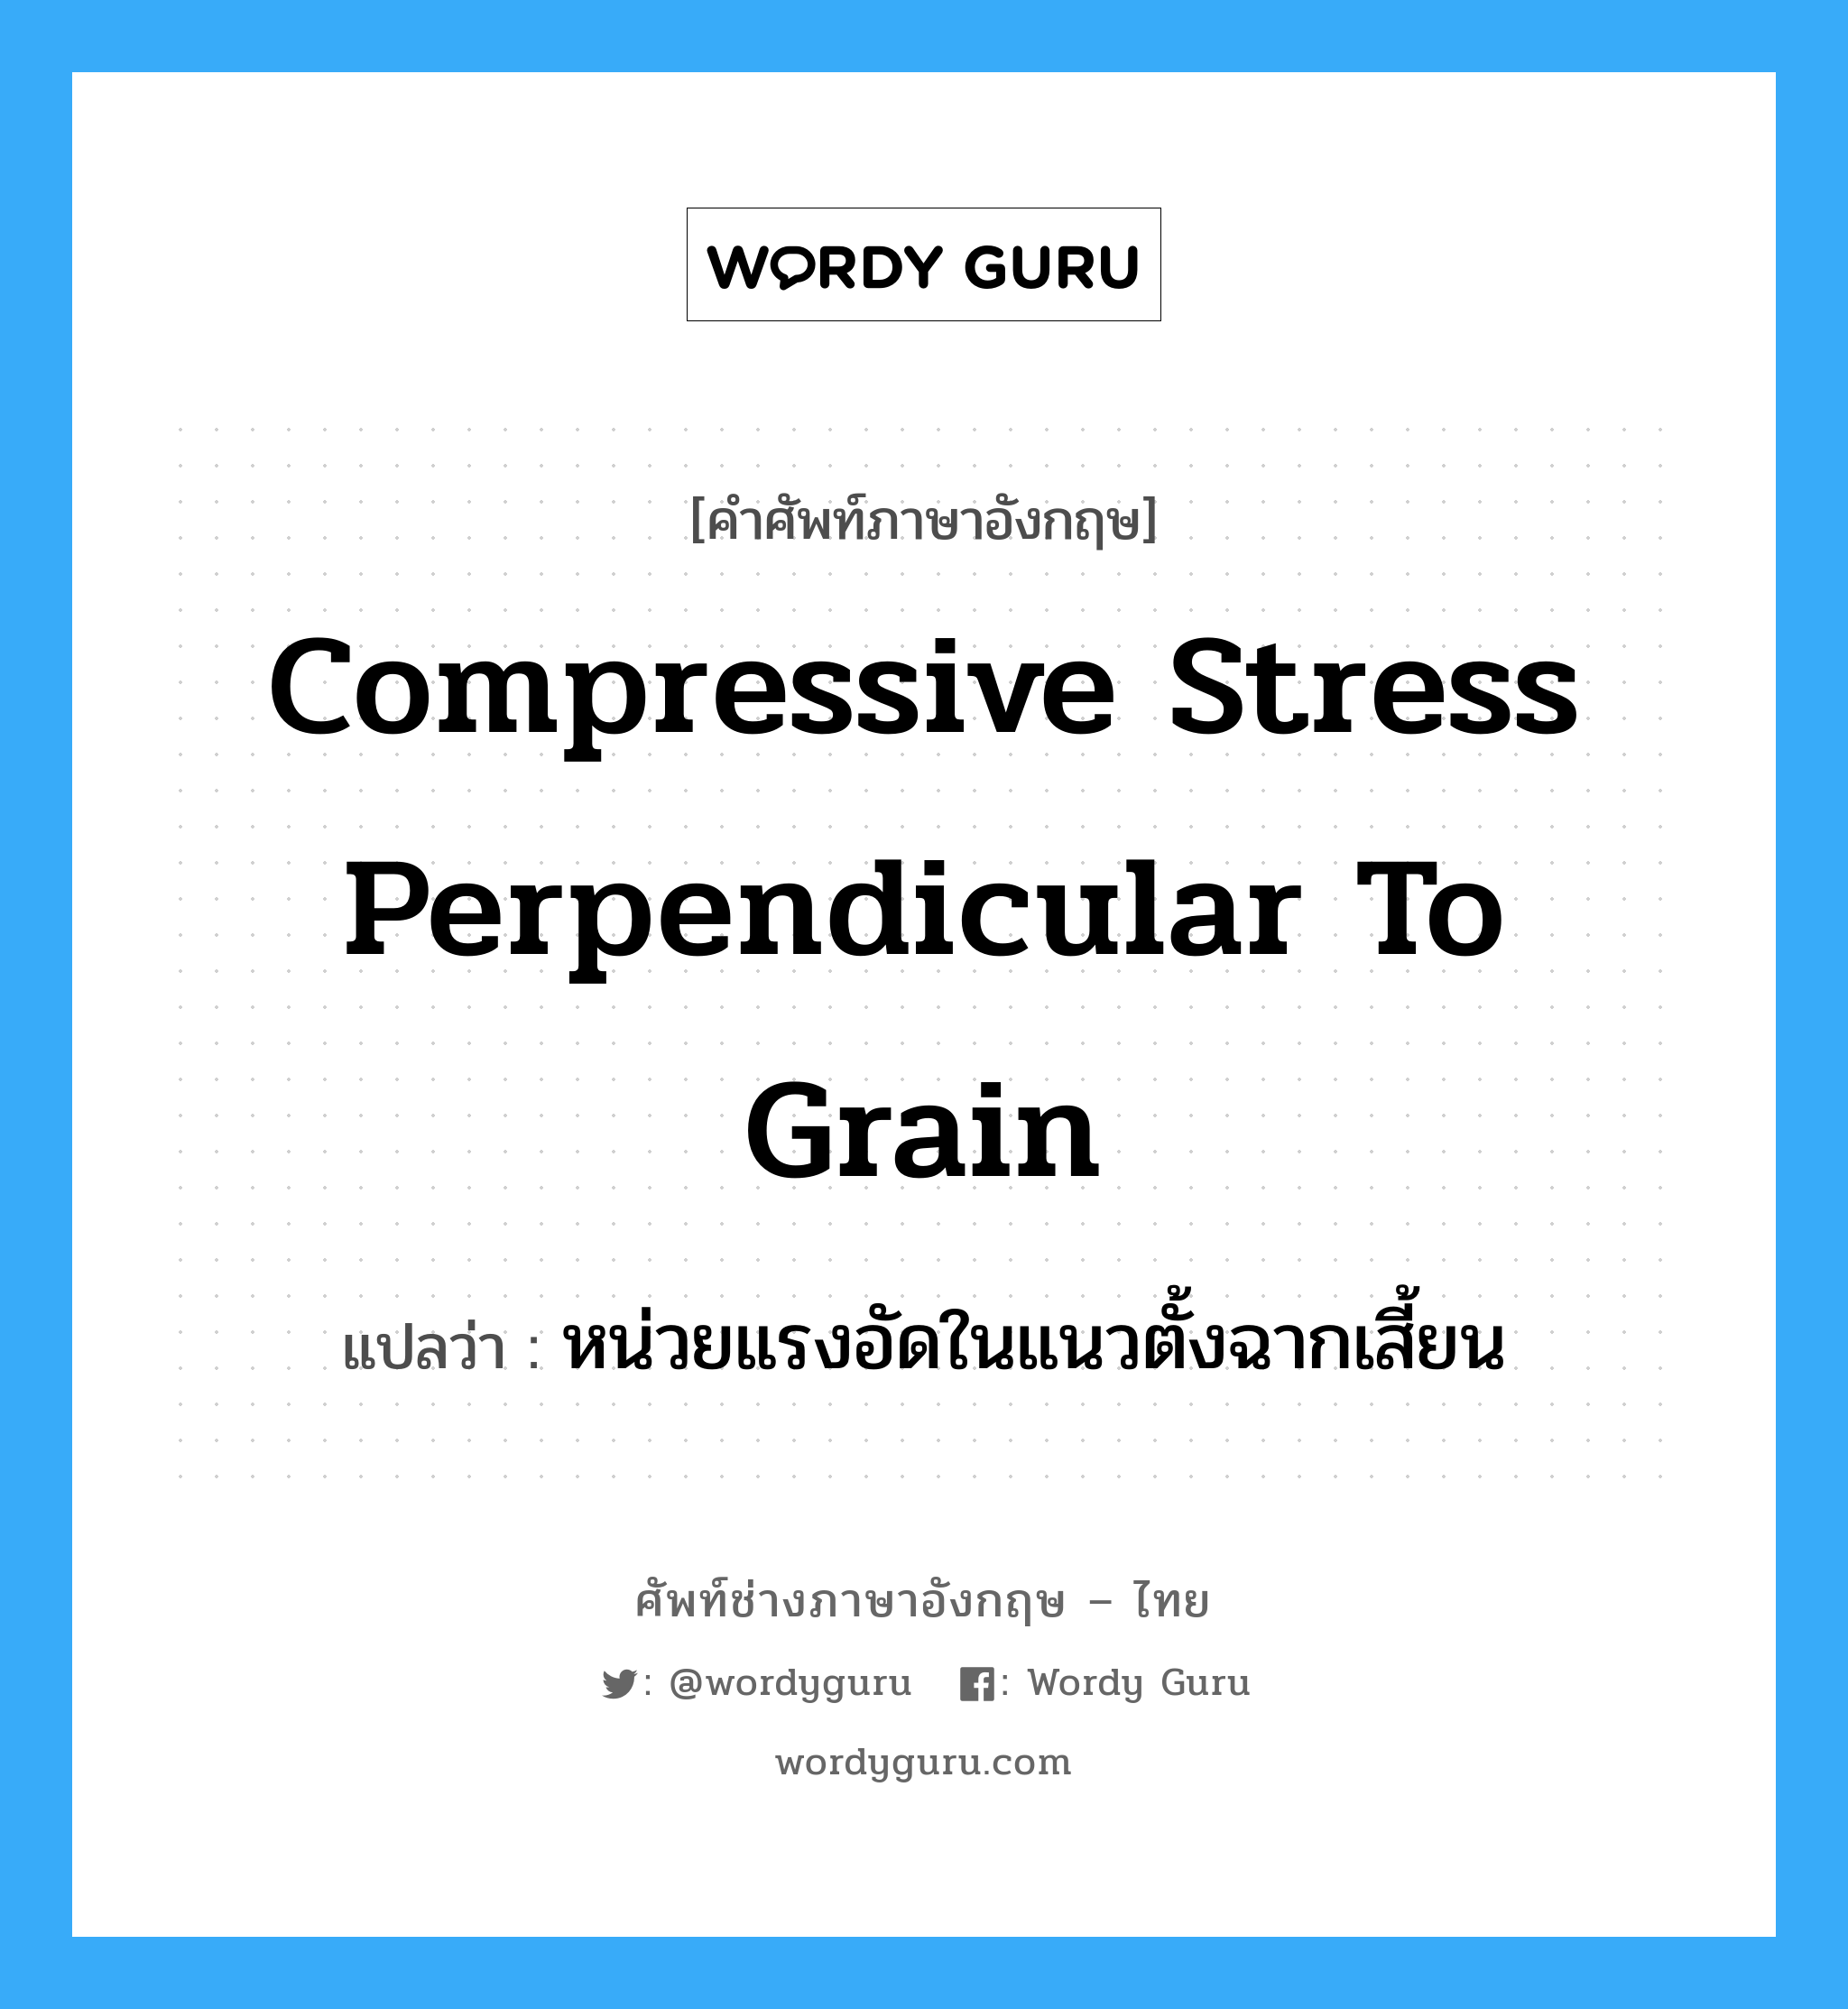 หน่วยแรงอัดในแนวตั้งฉากเสี้ยน ภาษาอังกฤษ?, คำศัพท์ช่างภาษาอังกฤษ - ไทย หน่วยแรงอัดในแนวตั้งฉากเสี้ยน คำศัพท์ภาษาอังกฤษ หน่วยแรงอัดในแนวตั้งฉากเสี้ยน แปลว่า compressive stress perpendicular to grain